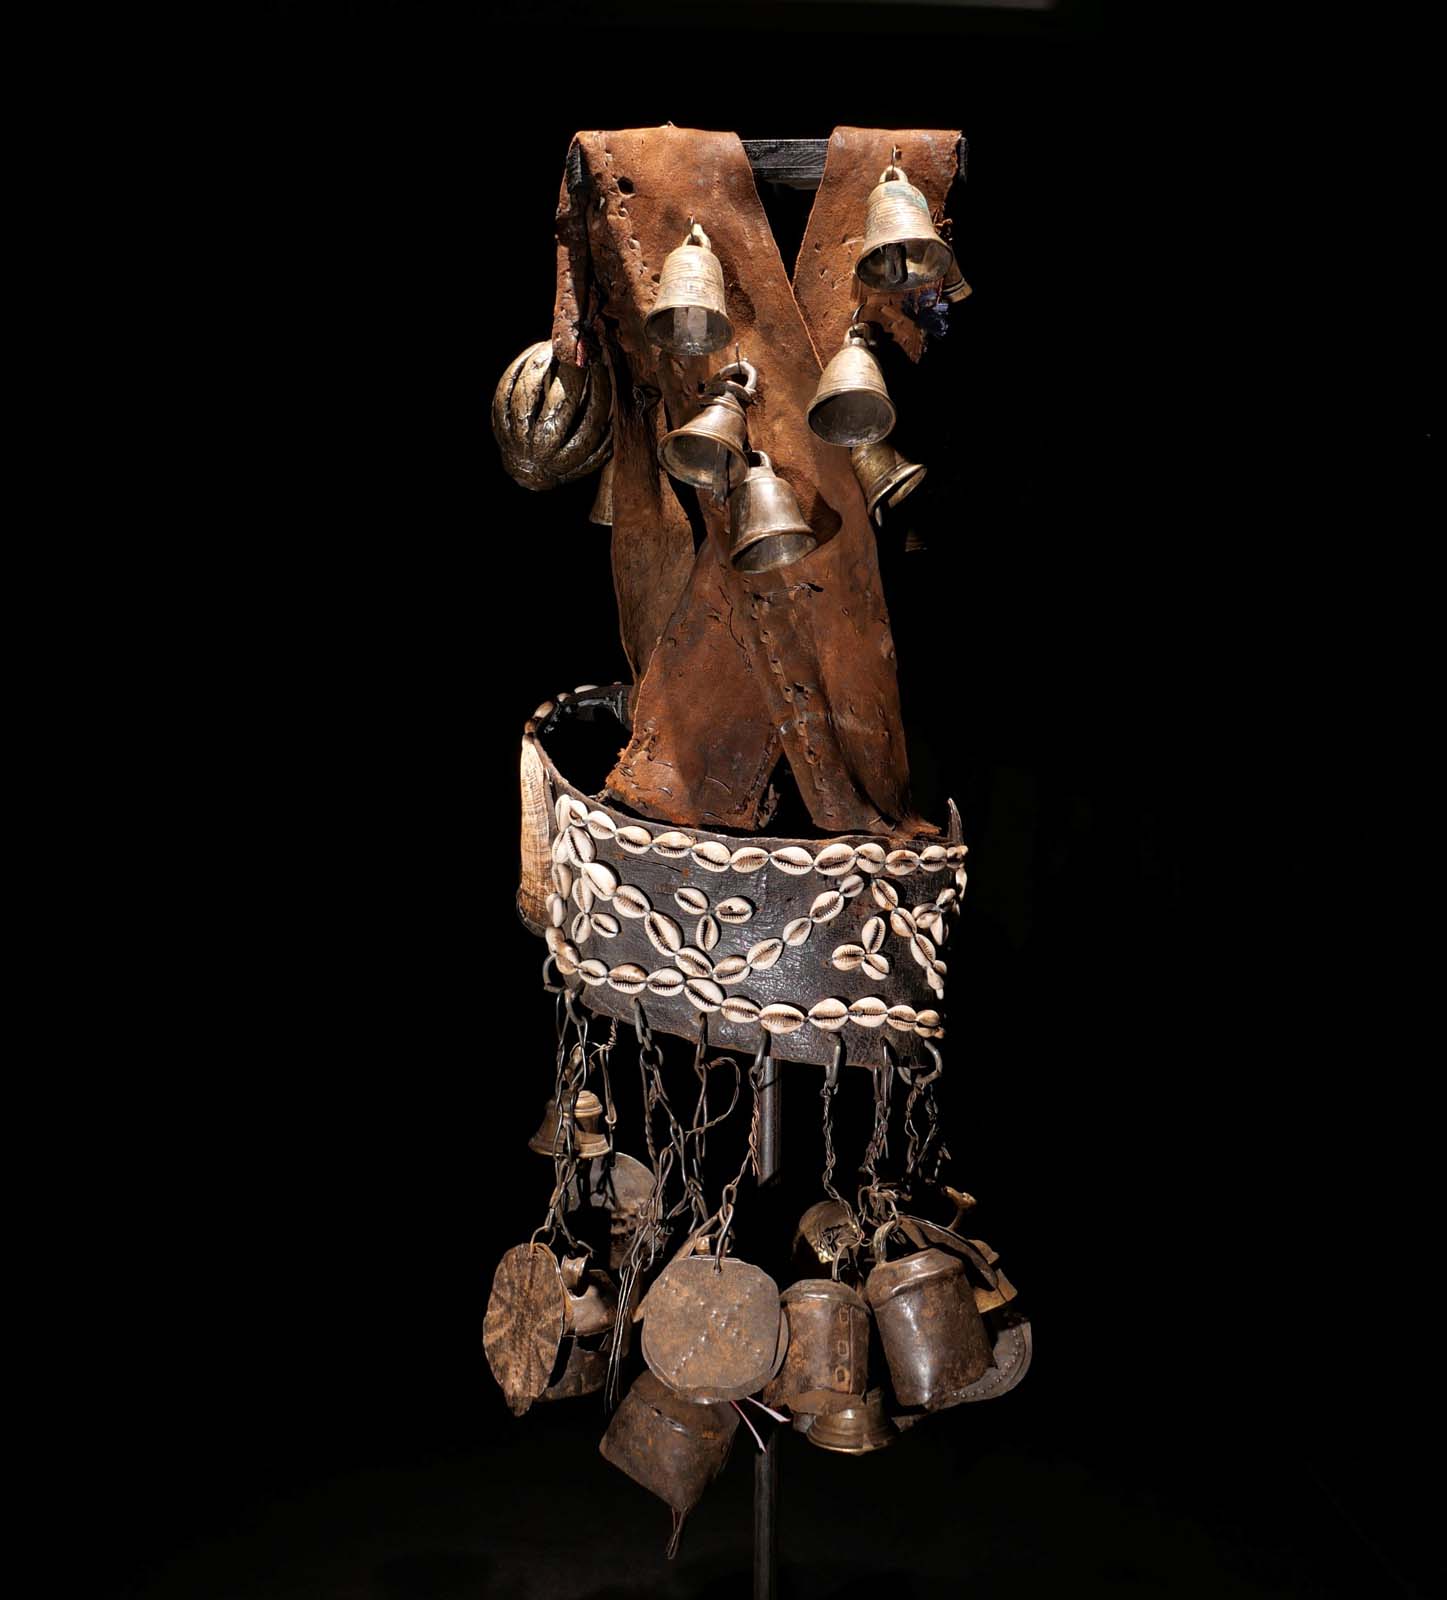 Glocken-Tanzgürtel eines Schamanen. Leder, Bronzeglocken, Kauri-Schnecken, Eisenglocken und Eisenscheiben. Frühes 20.Jhdt. Sehr selten.  Ost-Nepal 1200.- €. H 70 cm.